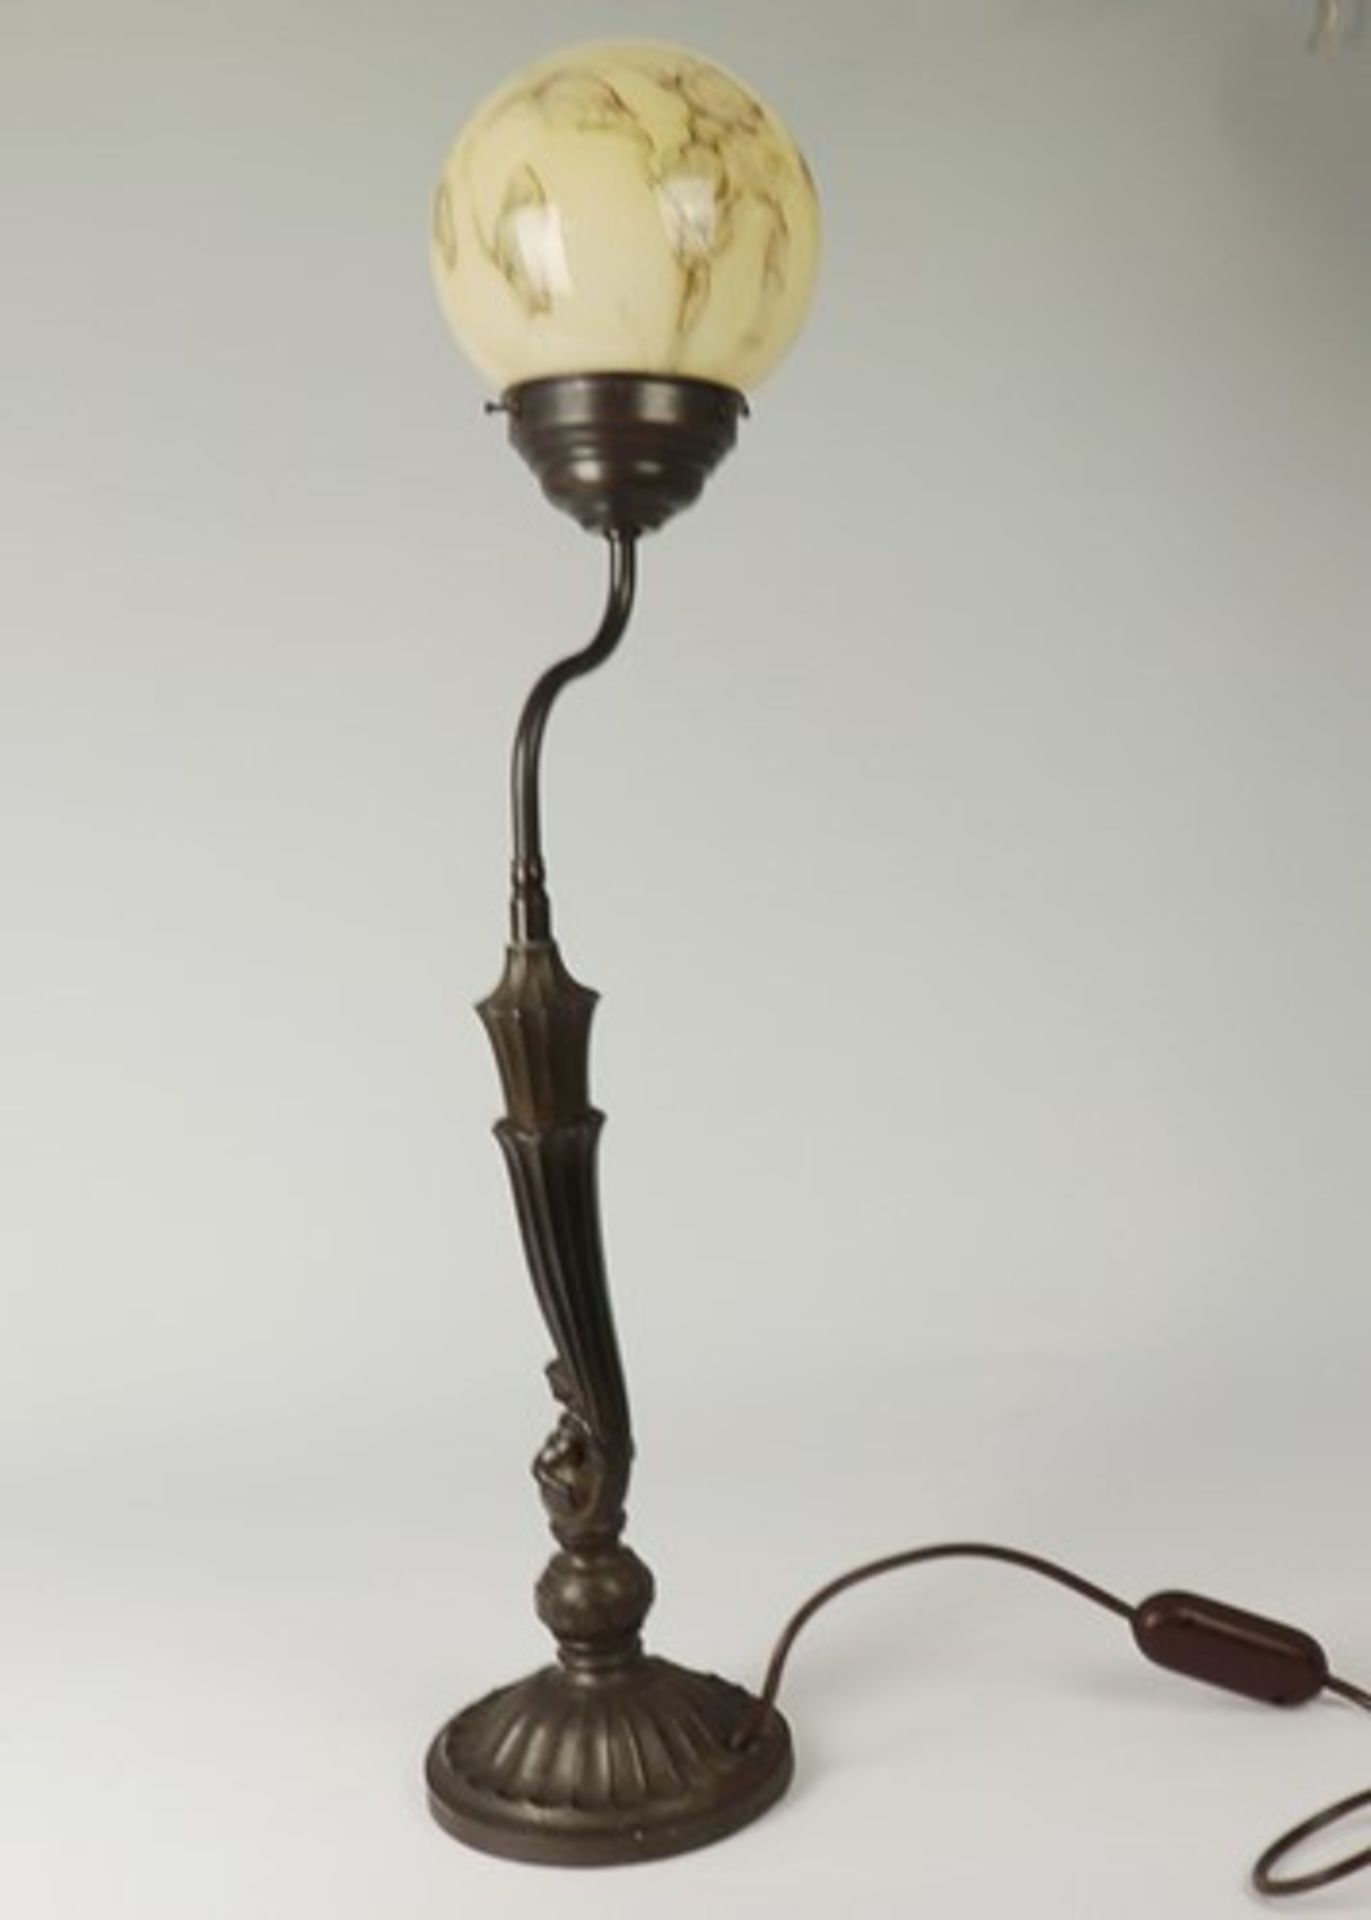 TischlampeMetall, einflammig, Rundfuß, konischer Schaft, kanneliert, un. reliefierte Kugel, - Image 3 of 4